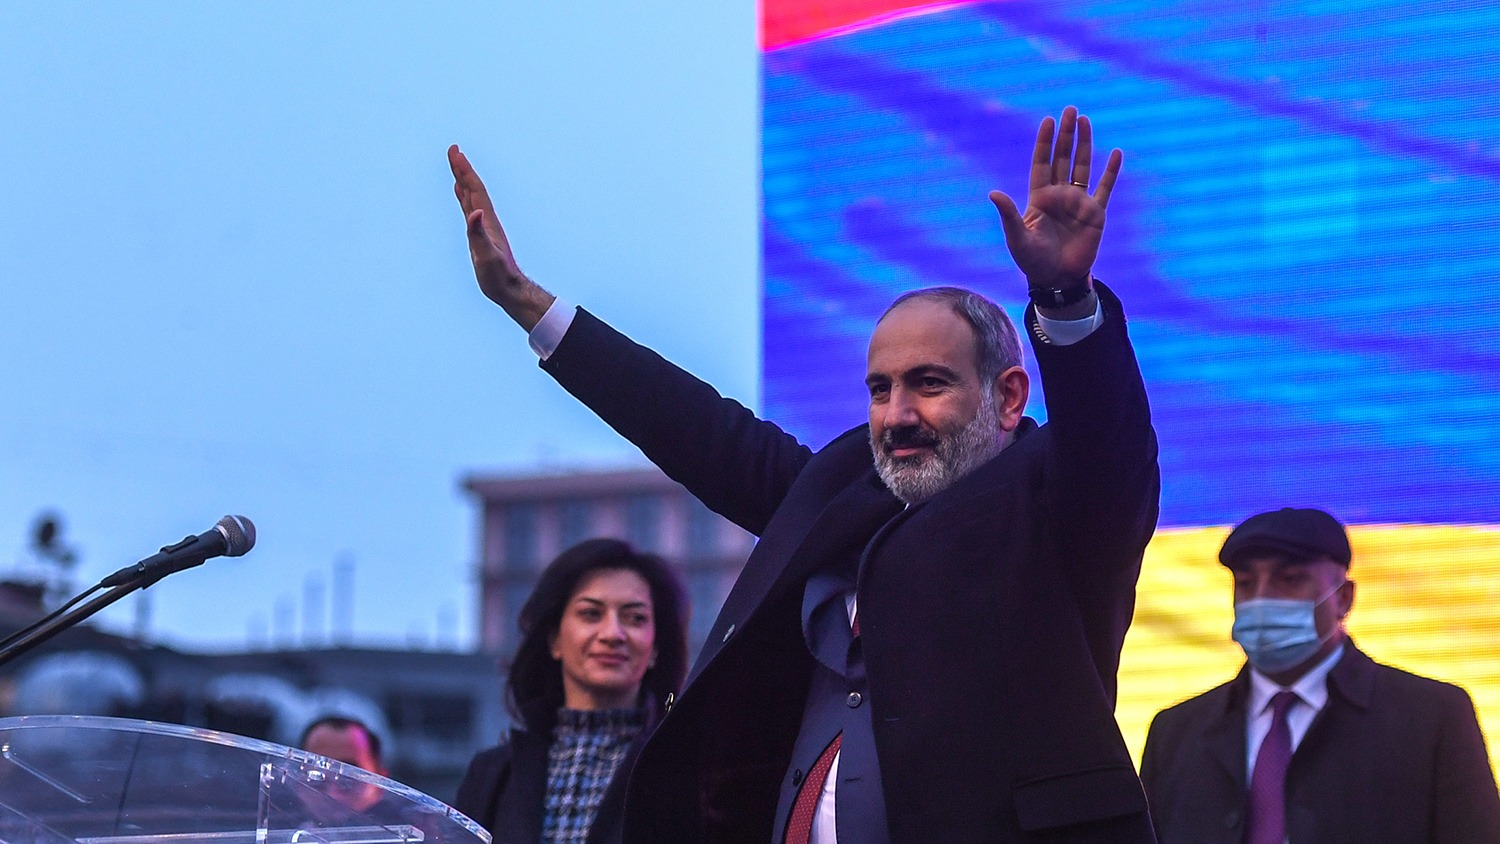 20 июня 2021г в Армении состоятся внеочередные парламентские выборы: Никол Пашинян